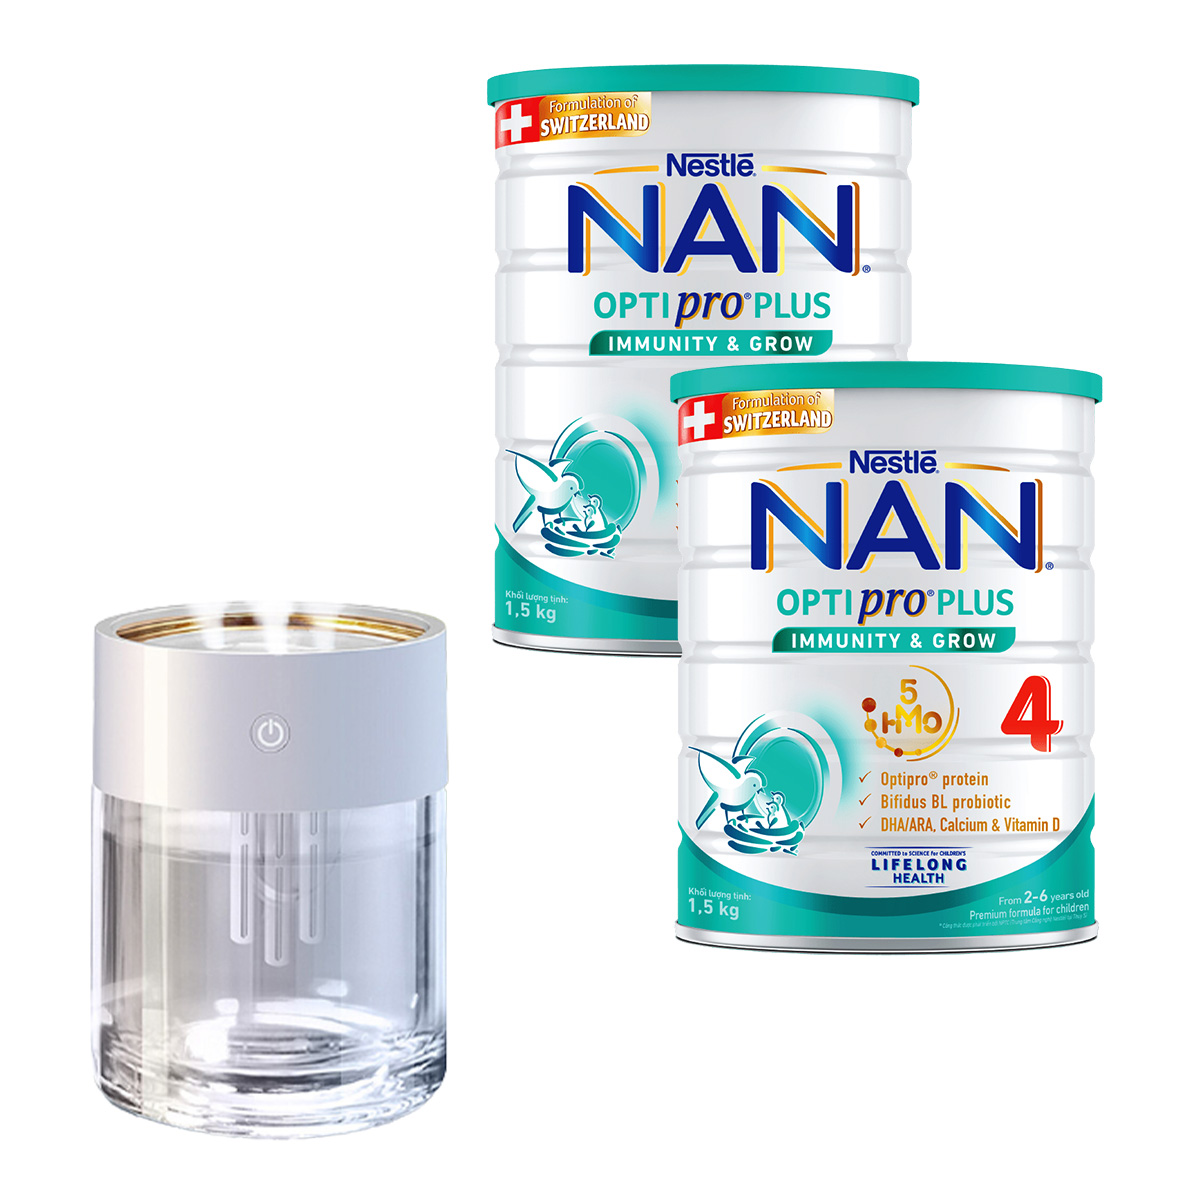 Hình ảnh Bộ 2 Lon Sữa bột Nestlé NAN OPTIPRO PLUS 4 1500g/lon với 5HMO Giúp tiêu hóa tốt + Tăng cường đề kháng Tặng Máy phun sương đèn led (2 - 6 tuổi)